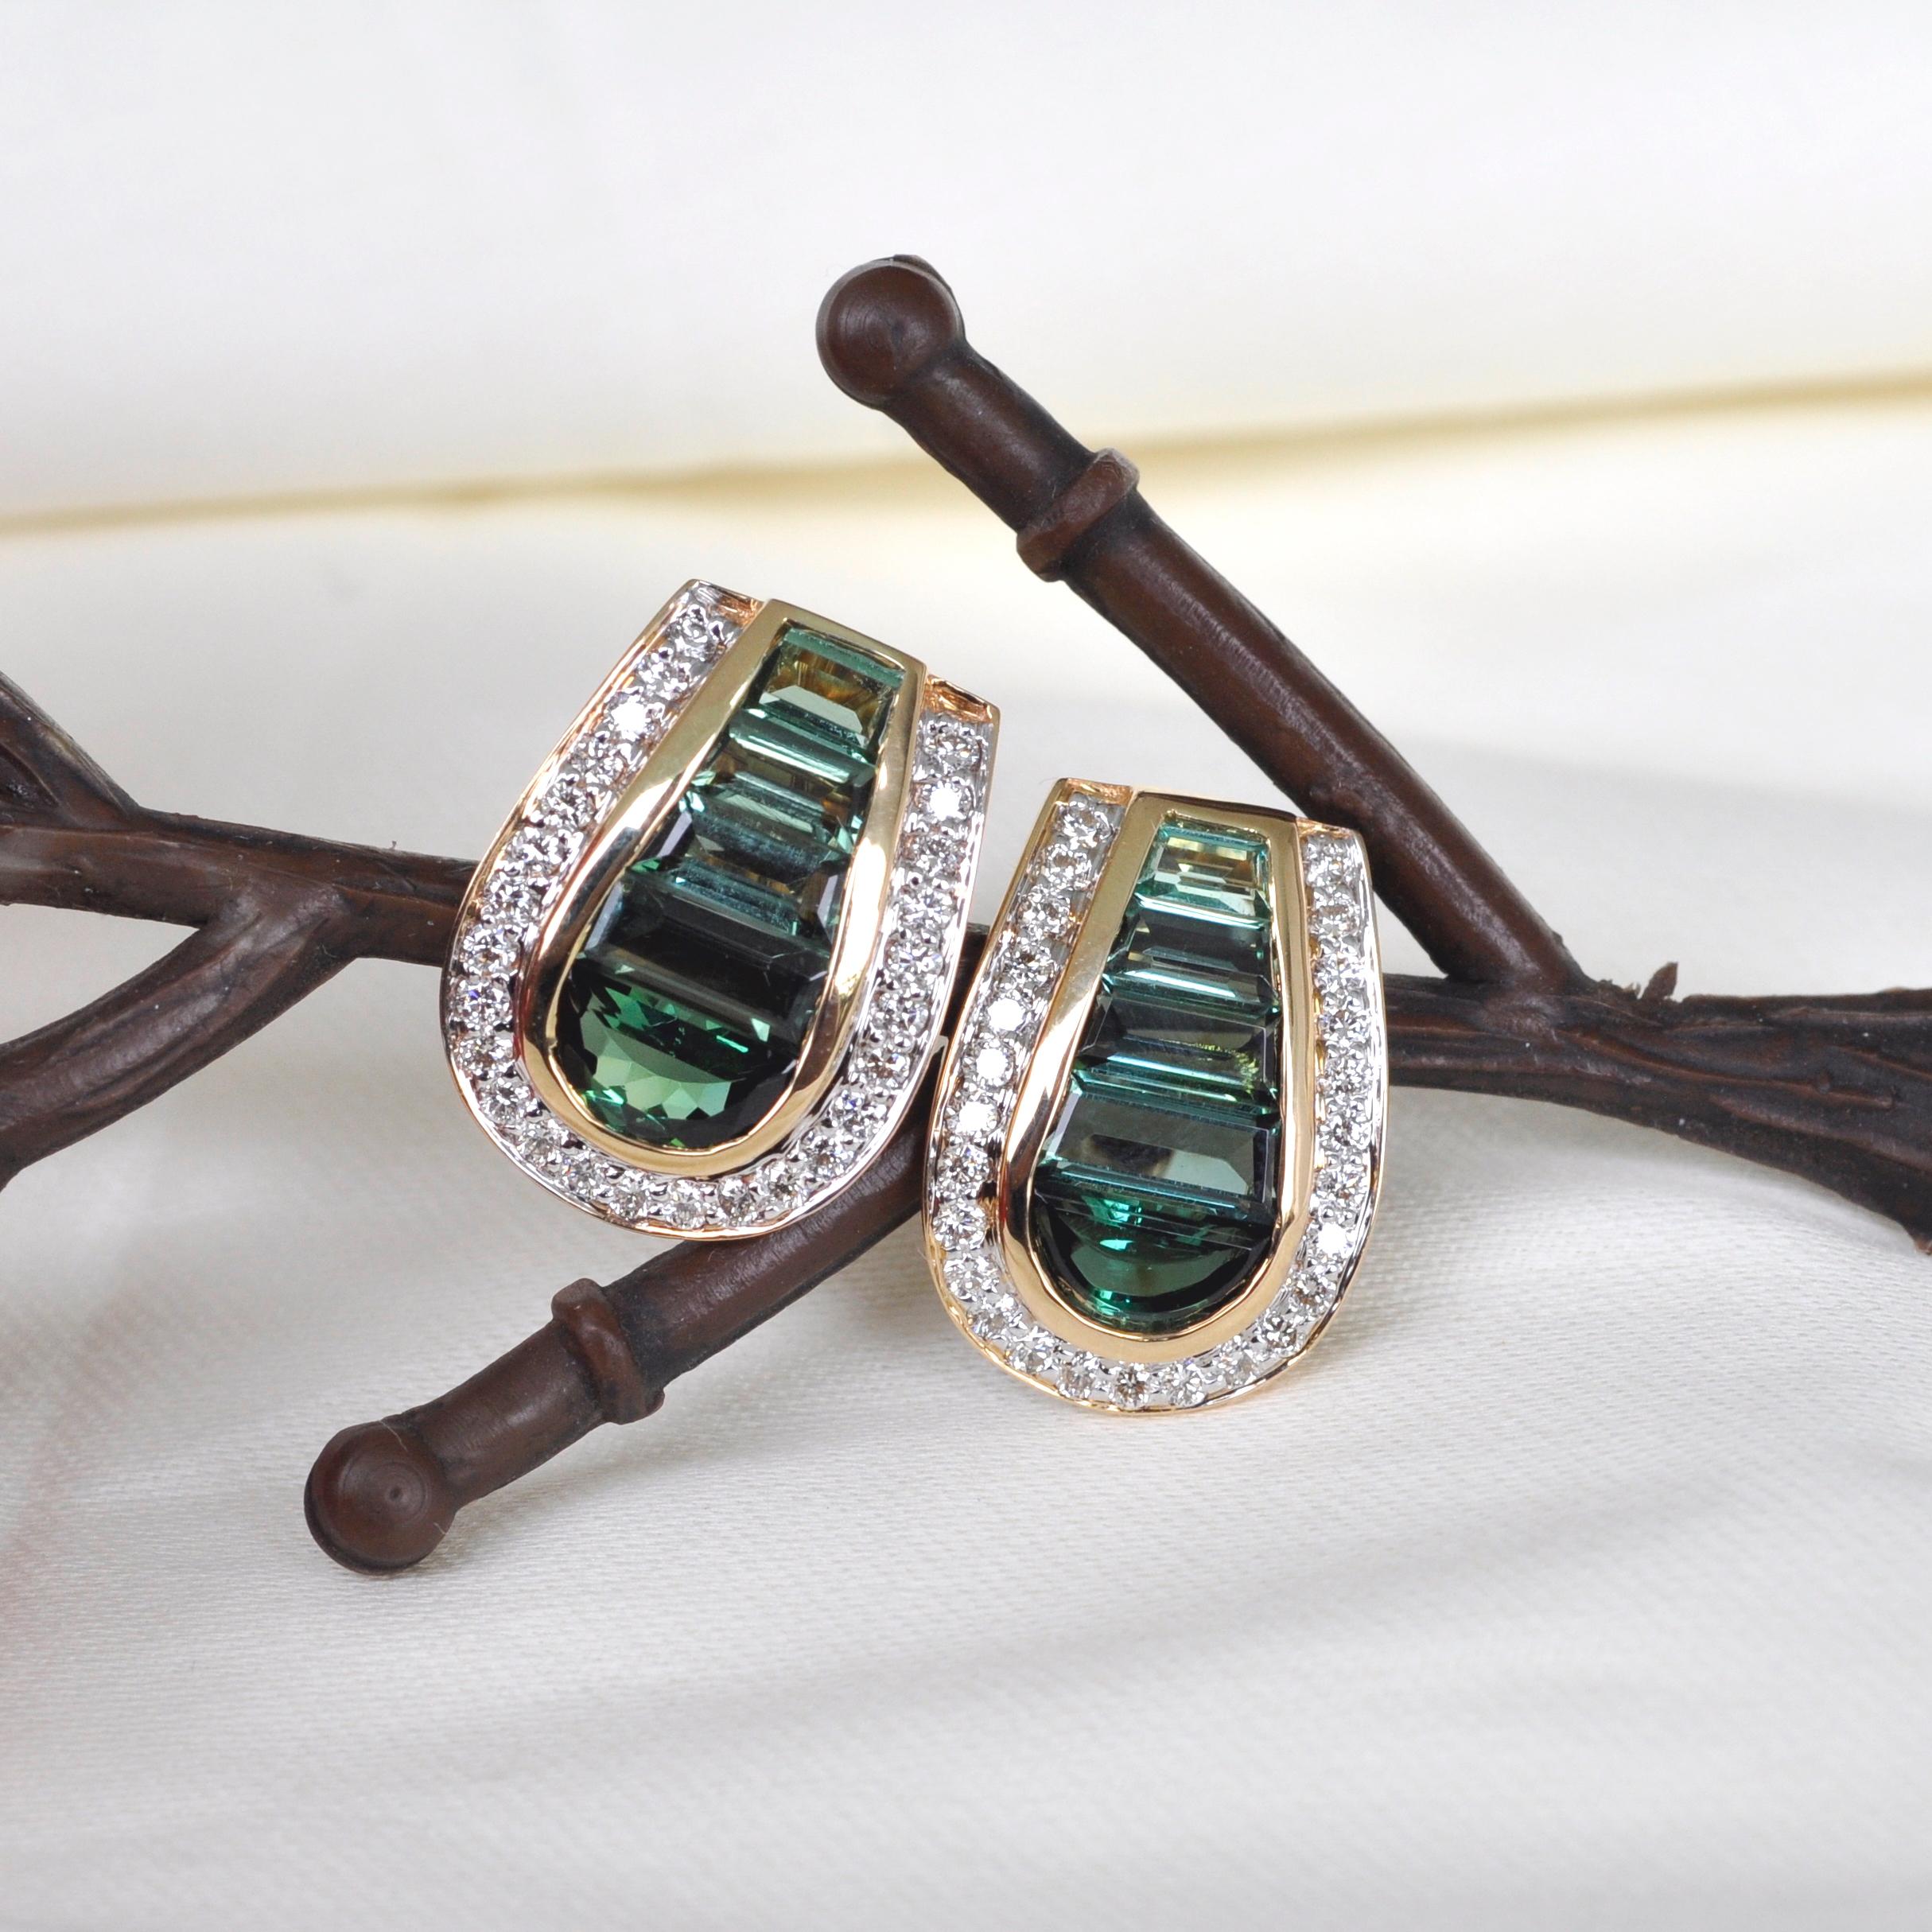 18 Karat Gold Art Deco Style Channel Set Green Tourmaline Diamond Studs Earrings 5